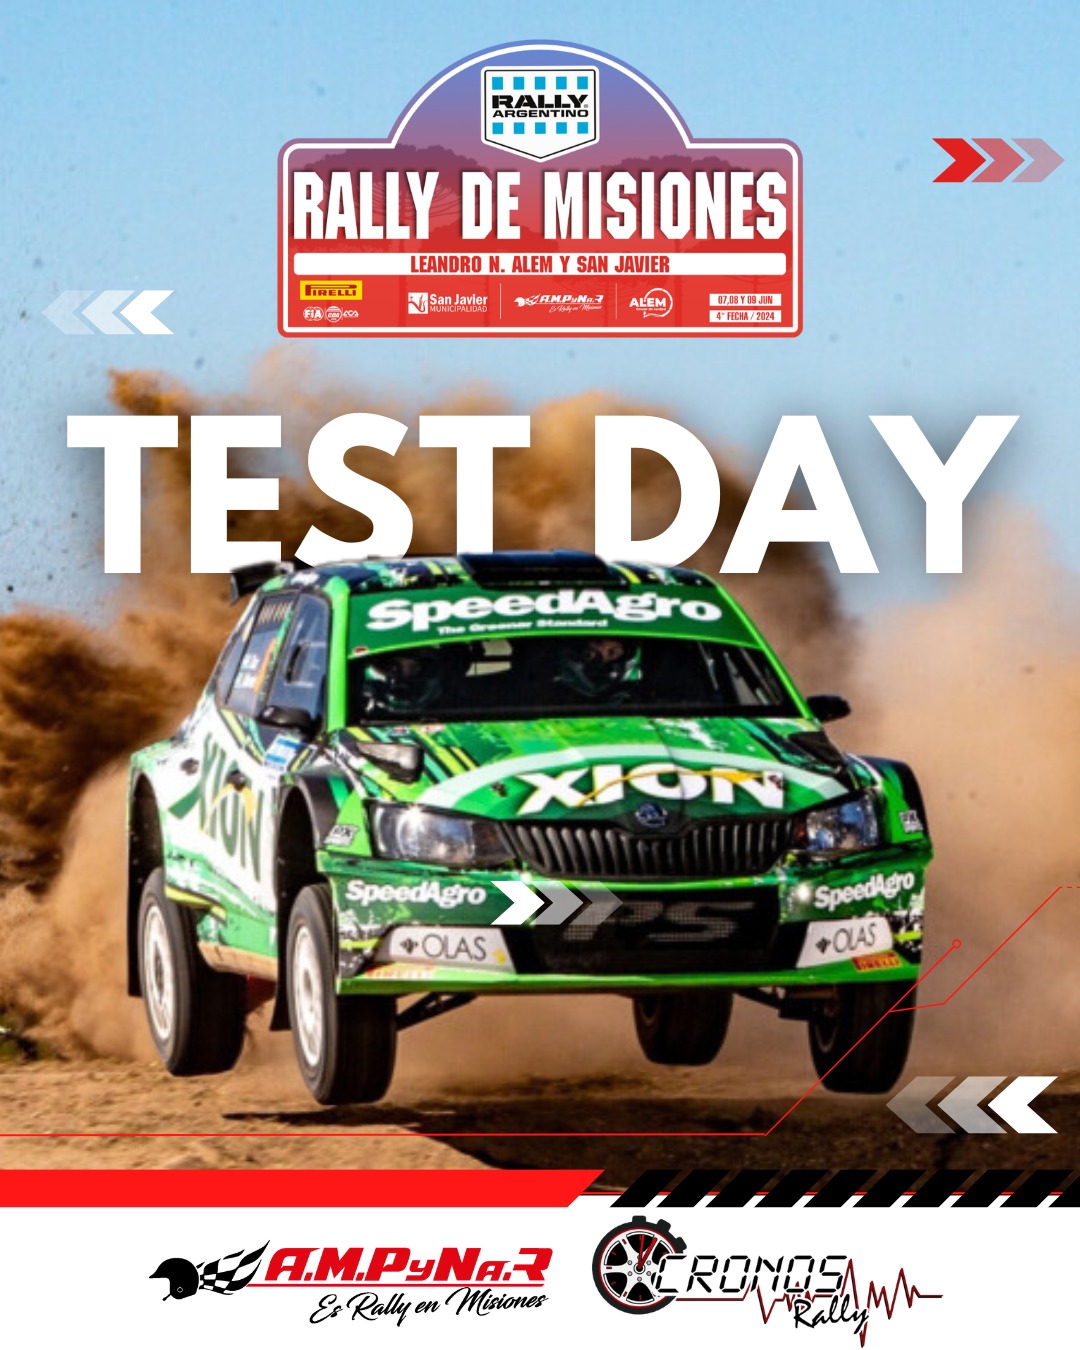 Automovilismo: con el Test Day el Rally Argentino comienza a acelerar en Misiones imagen-8